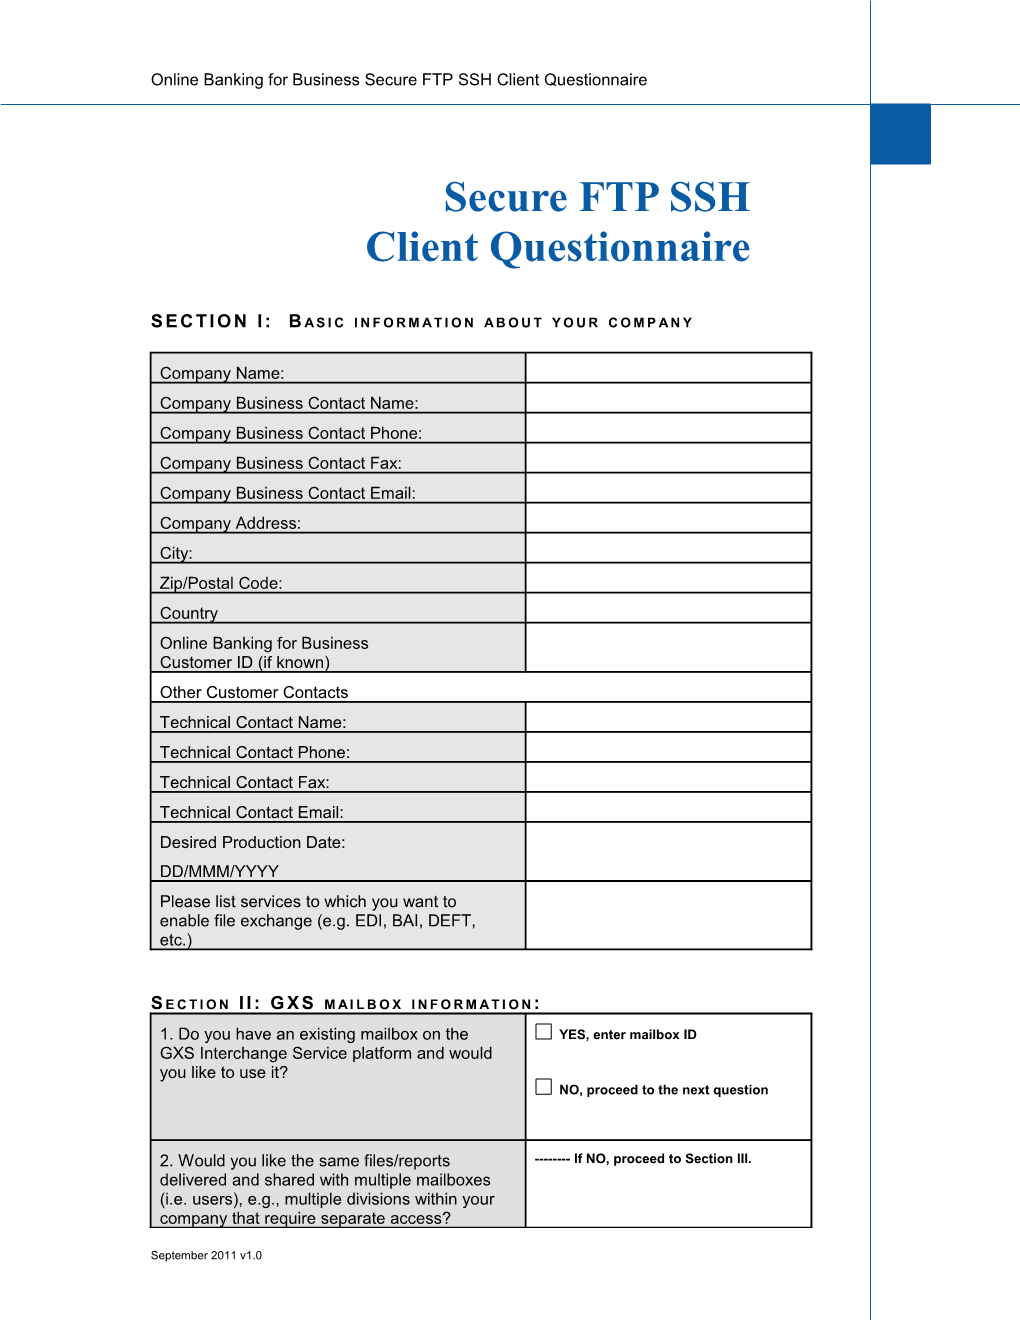 Secure FTP SSL Client Questionnaire